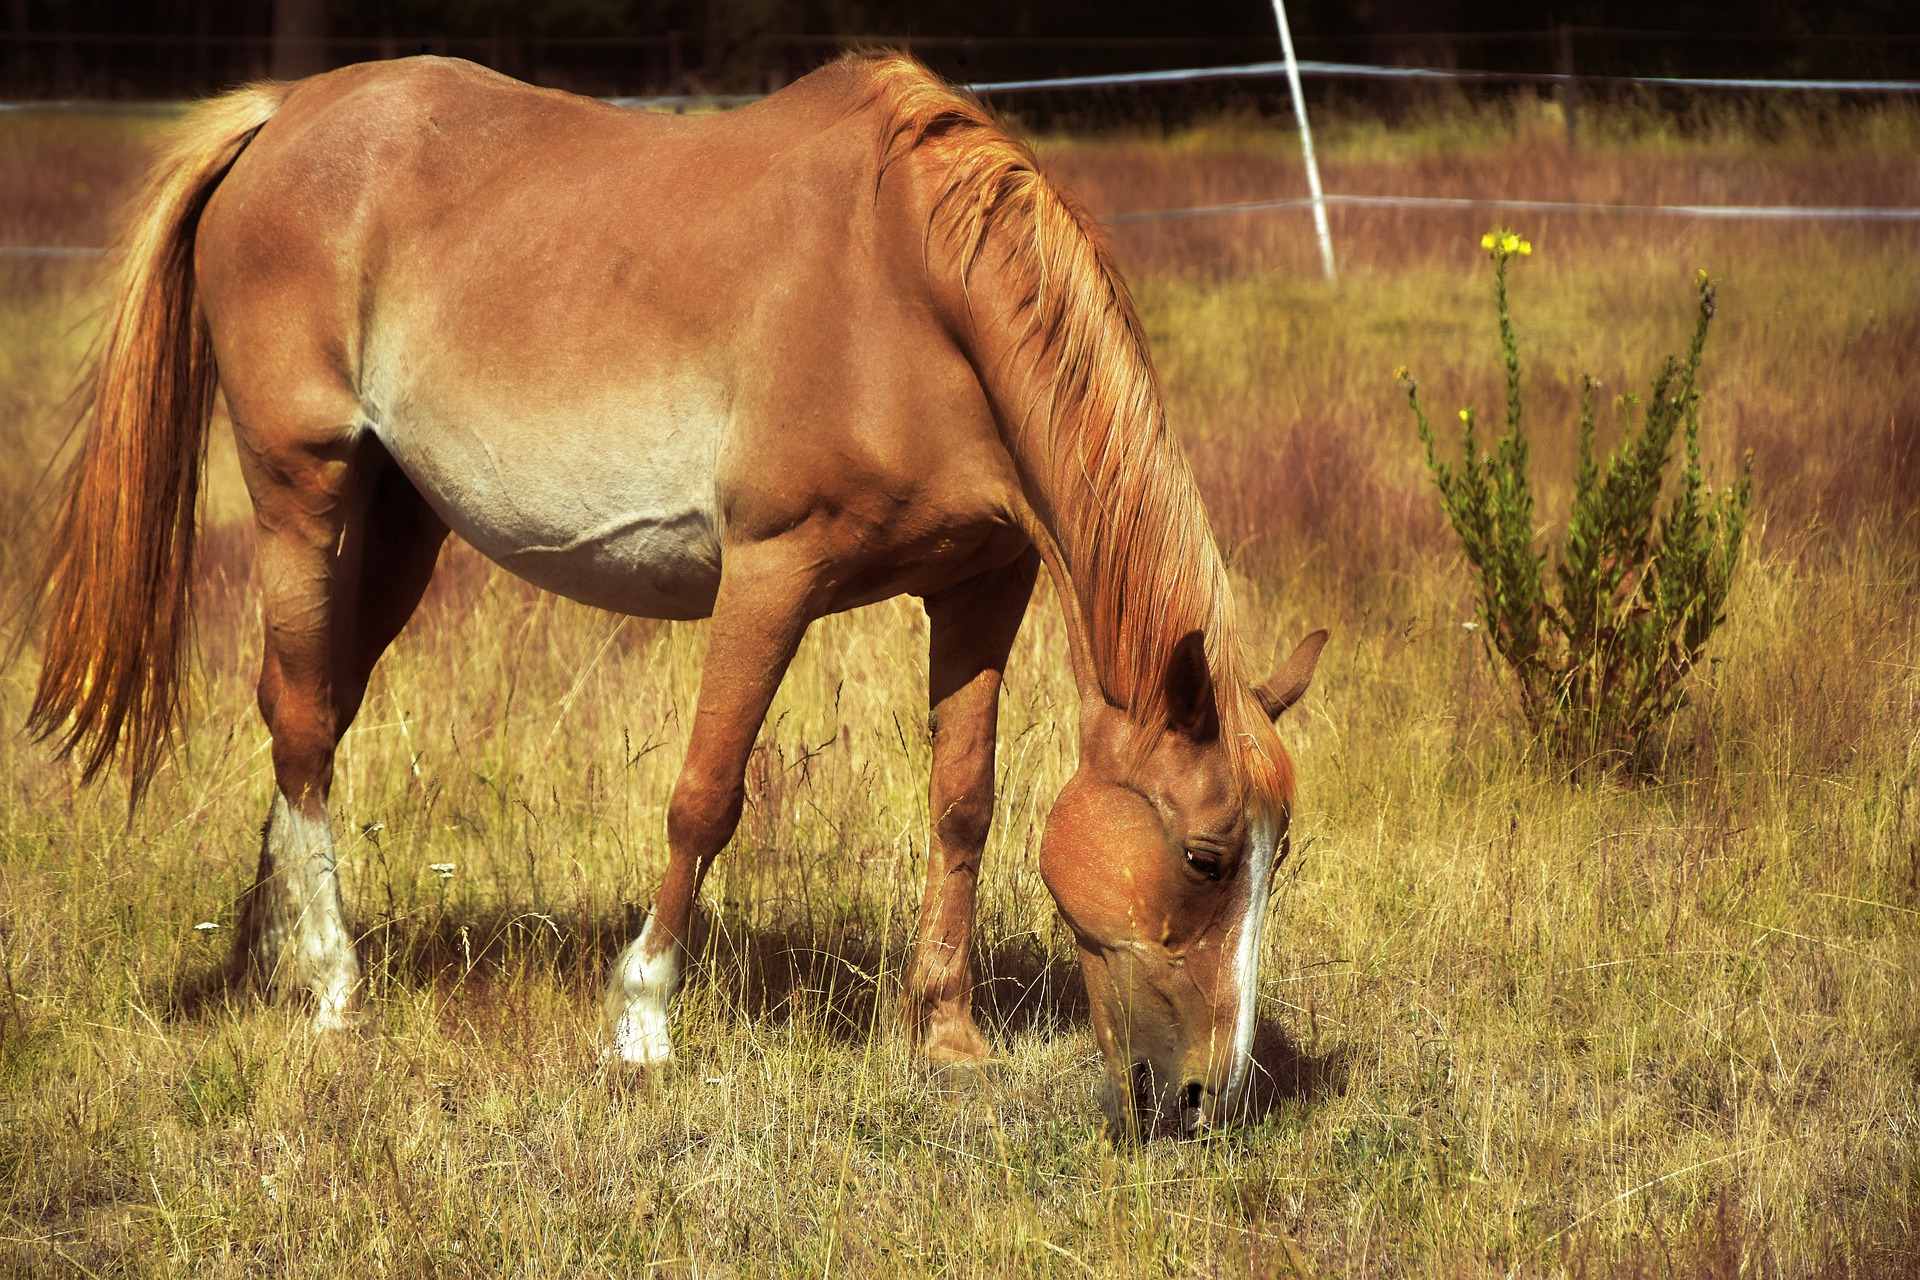 chestnut horse grazes instead of eating grain